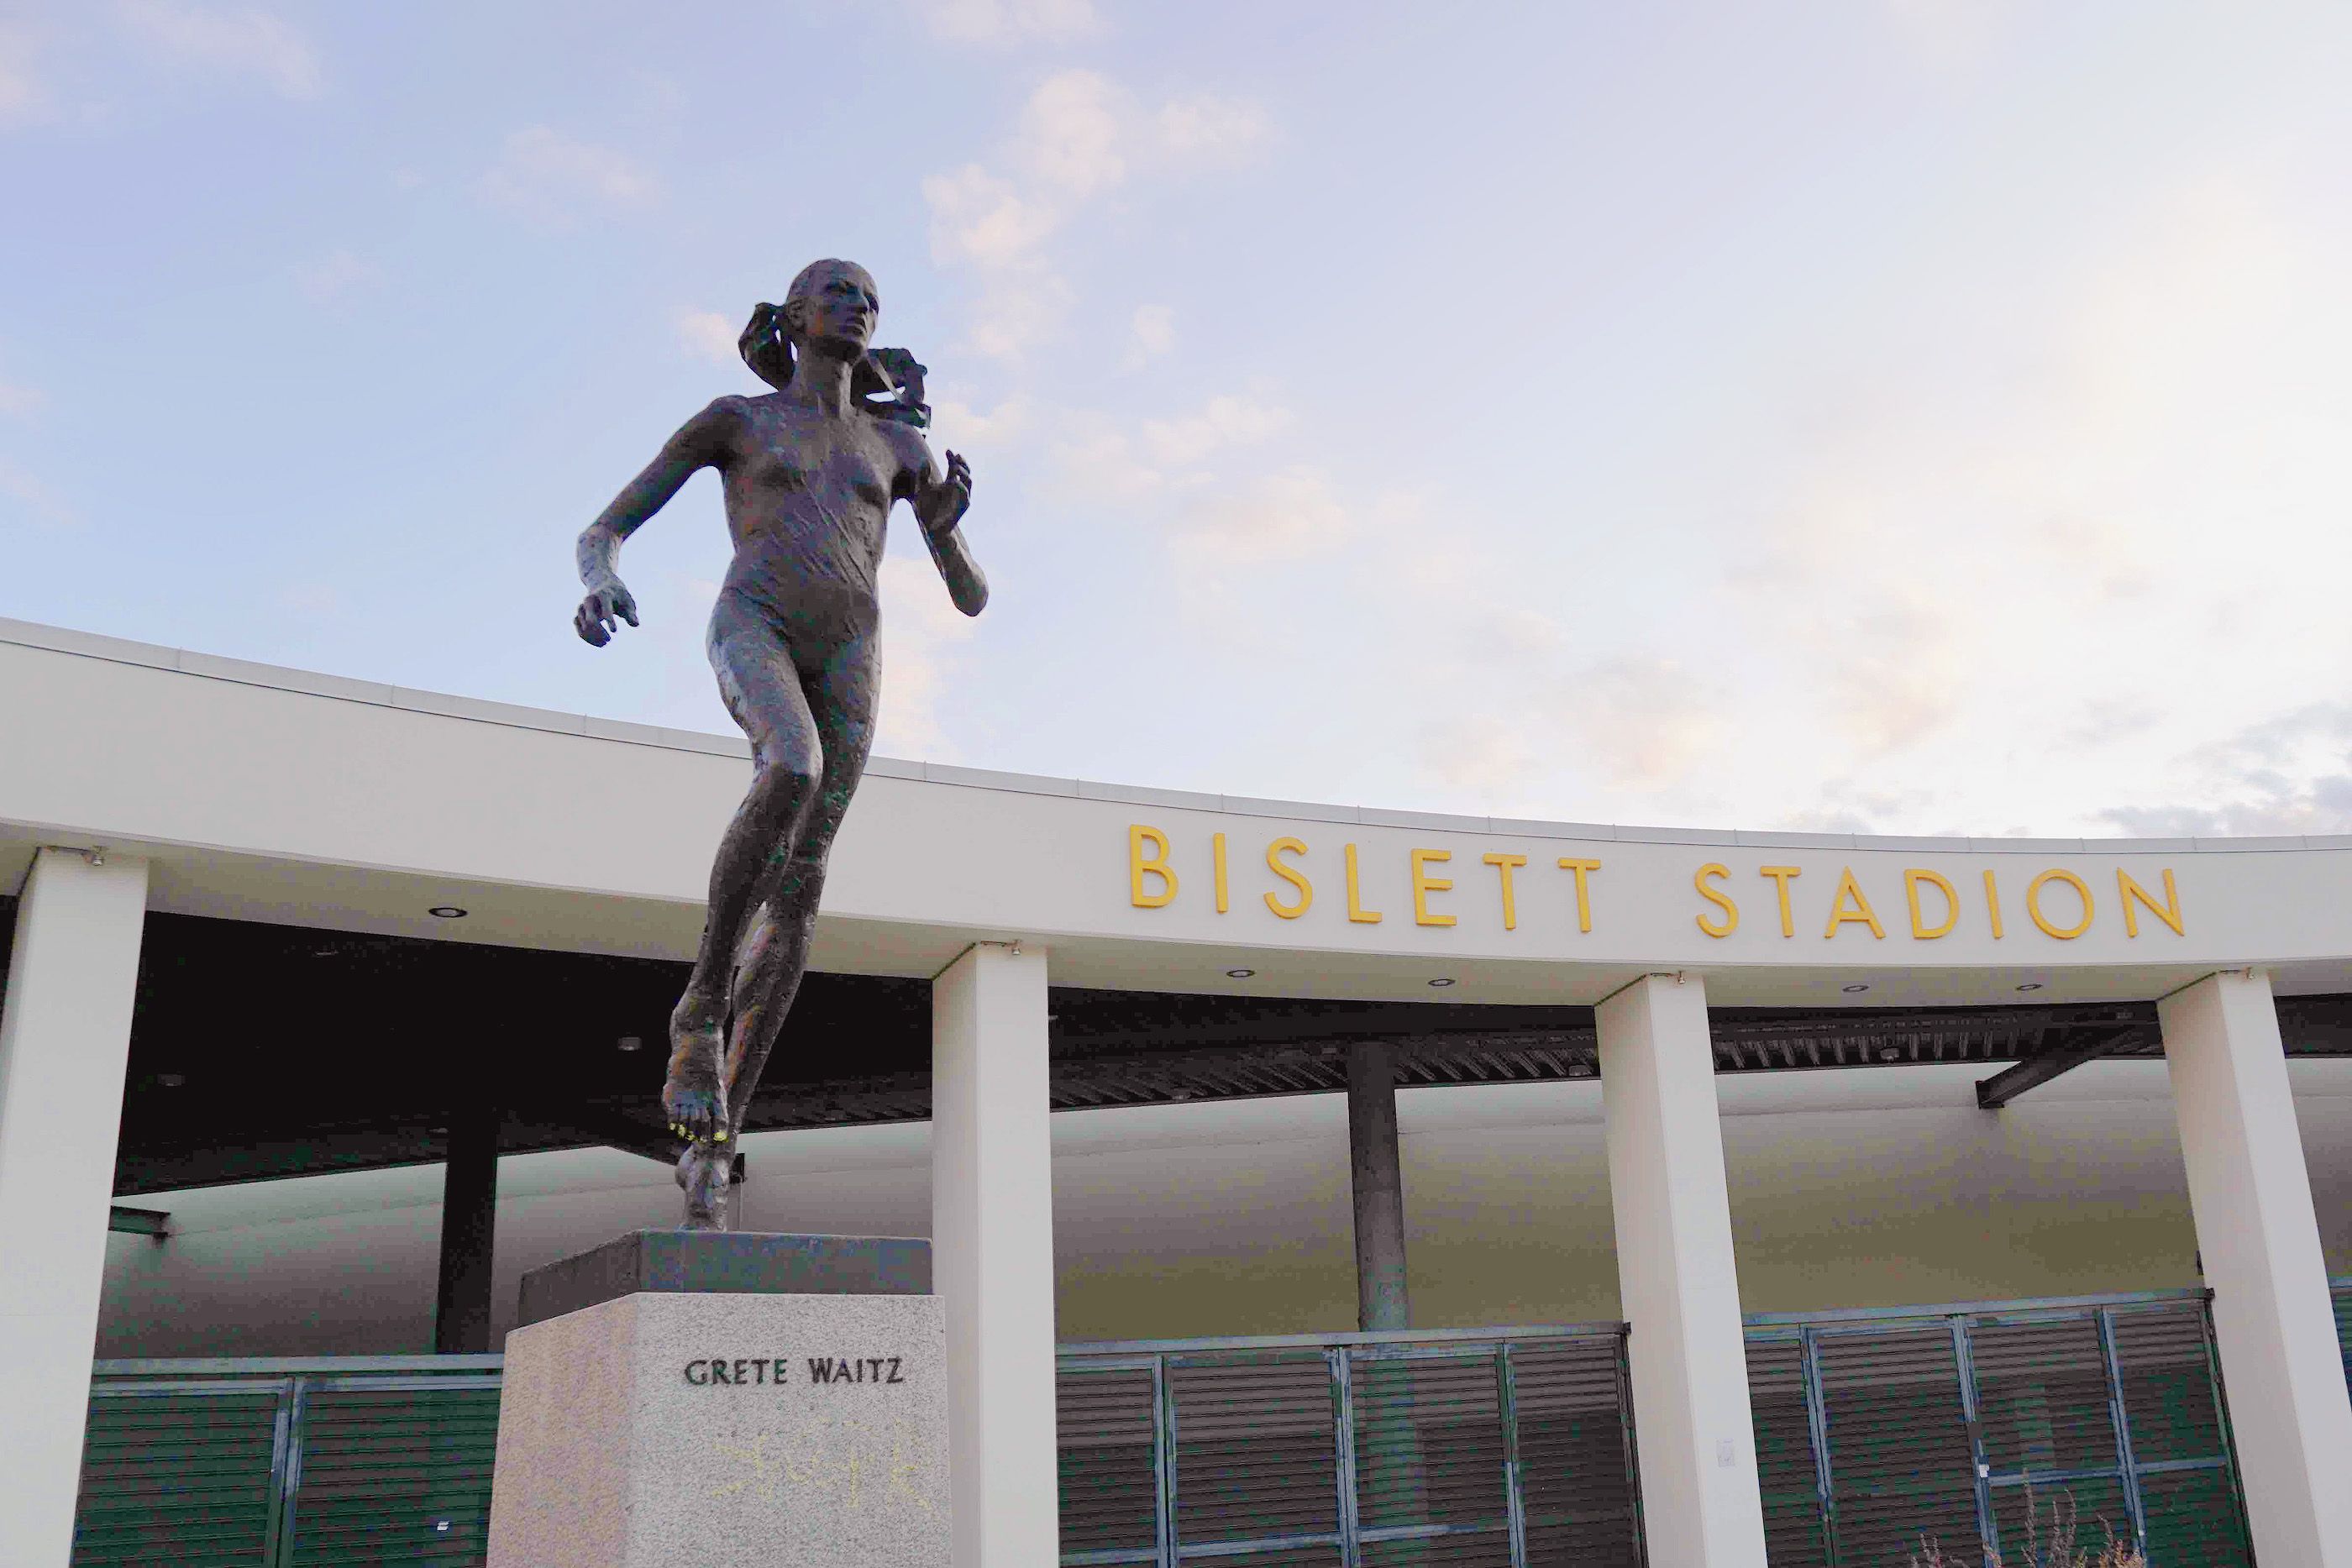 The Grete Waitz statue outside Bislett Stadium